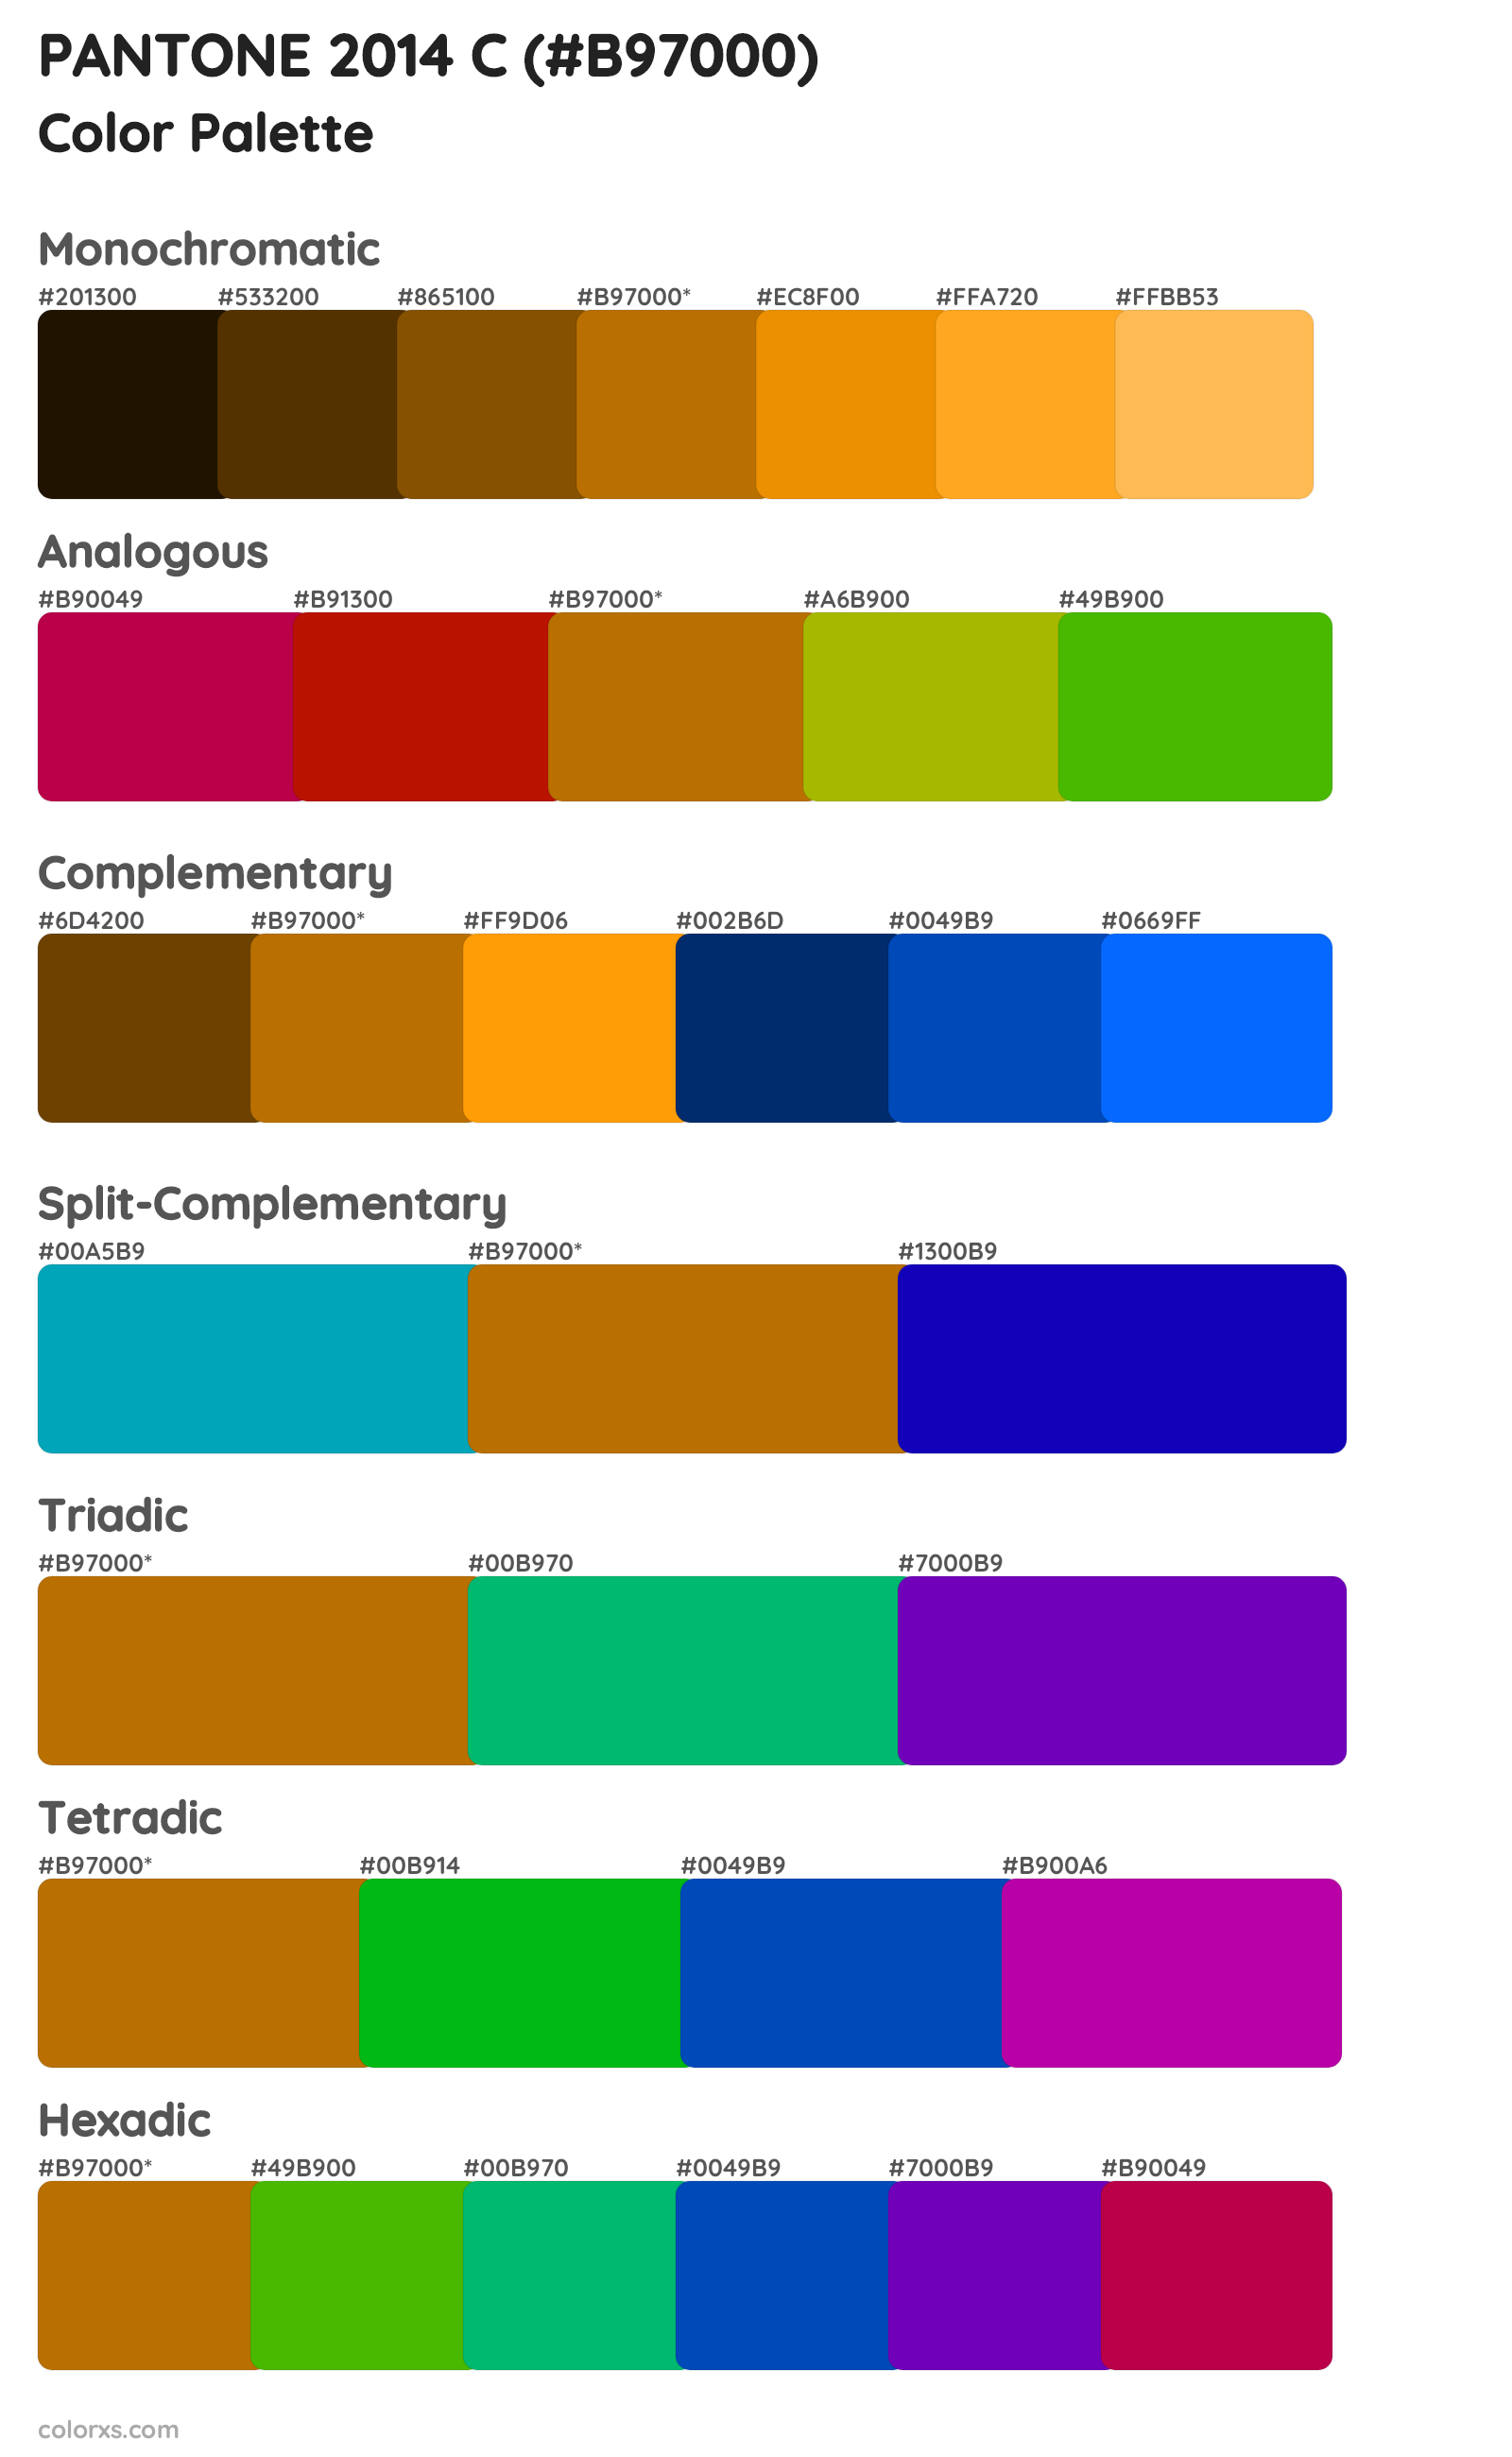 PANTONE 2014 C Color Scheme Palettes